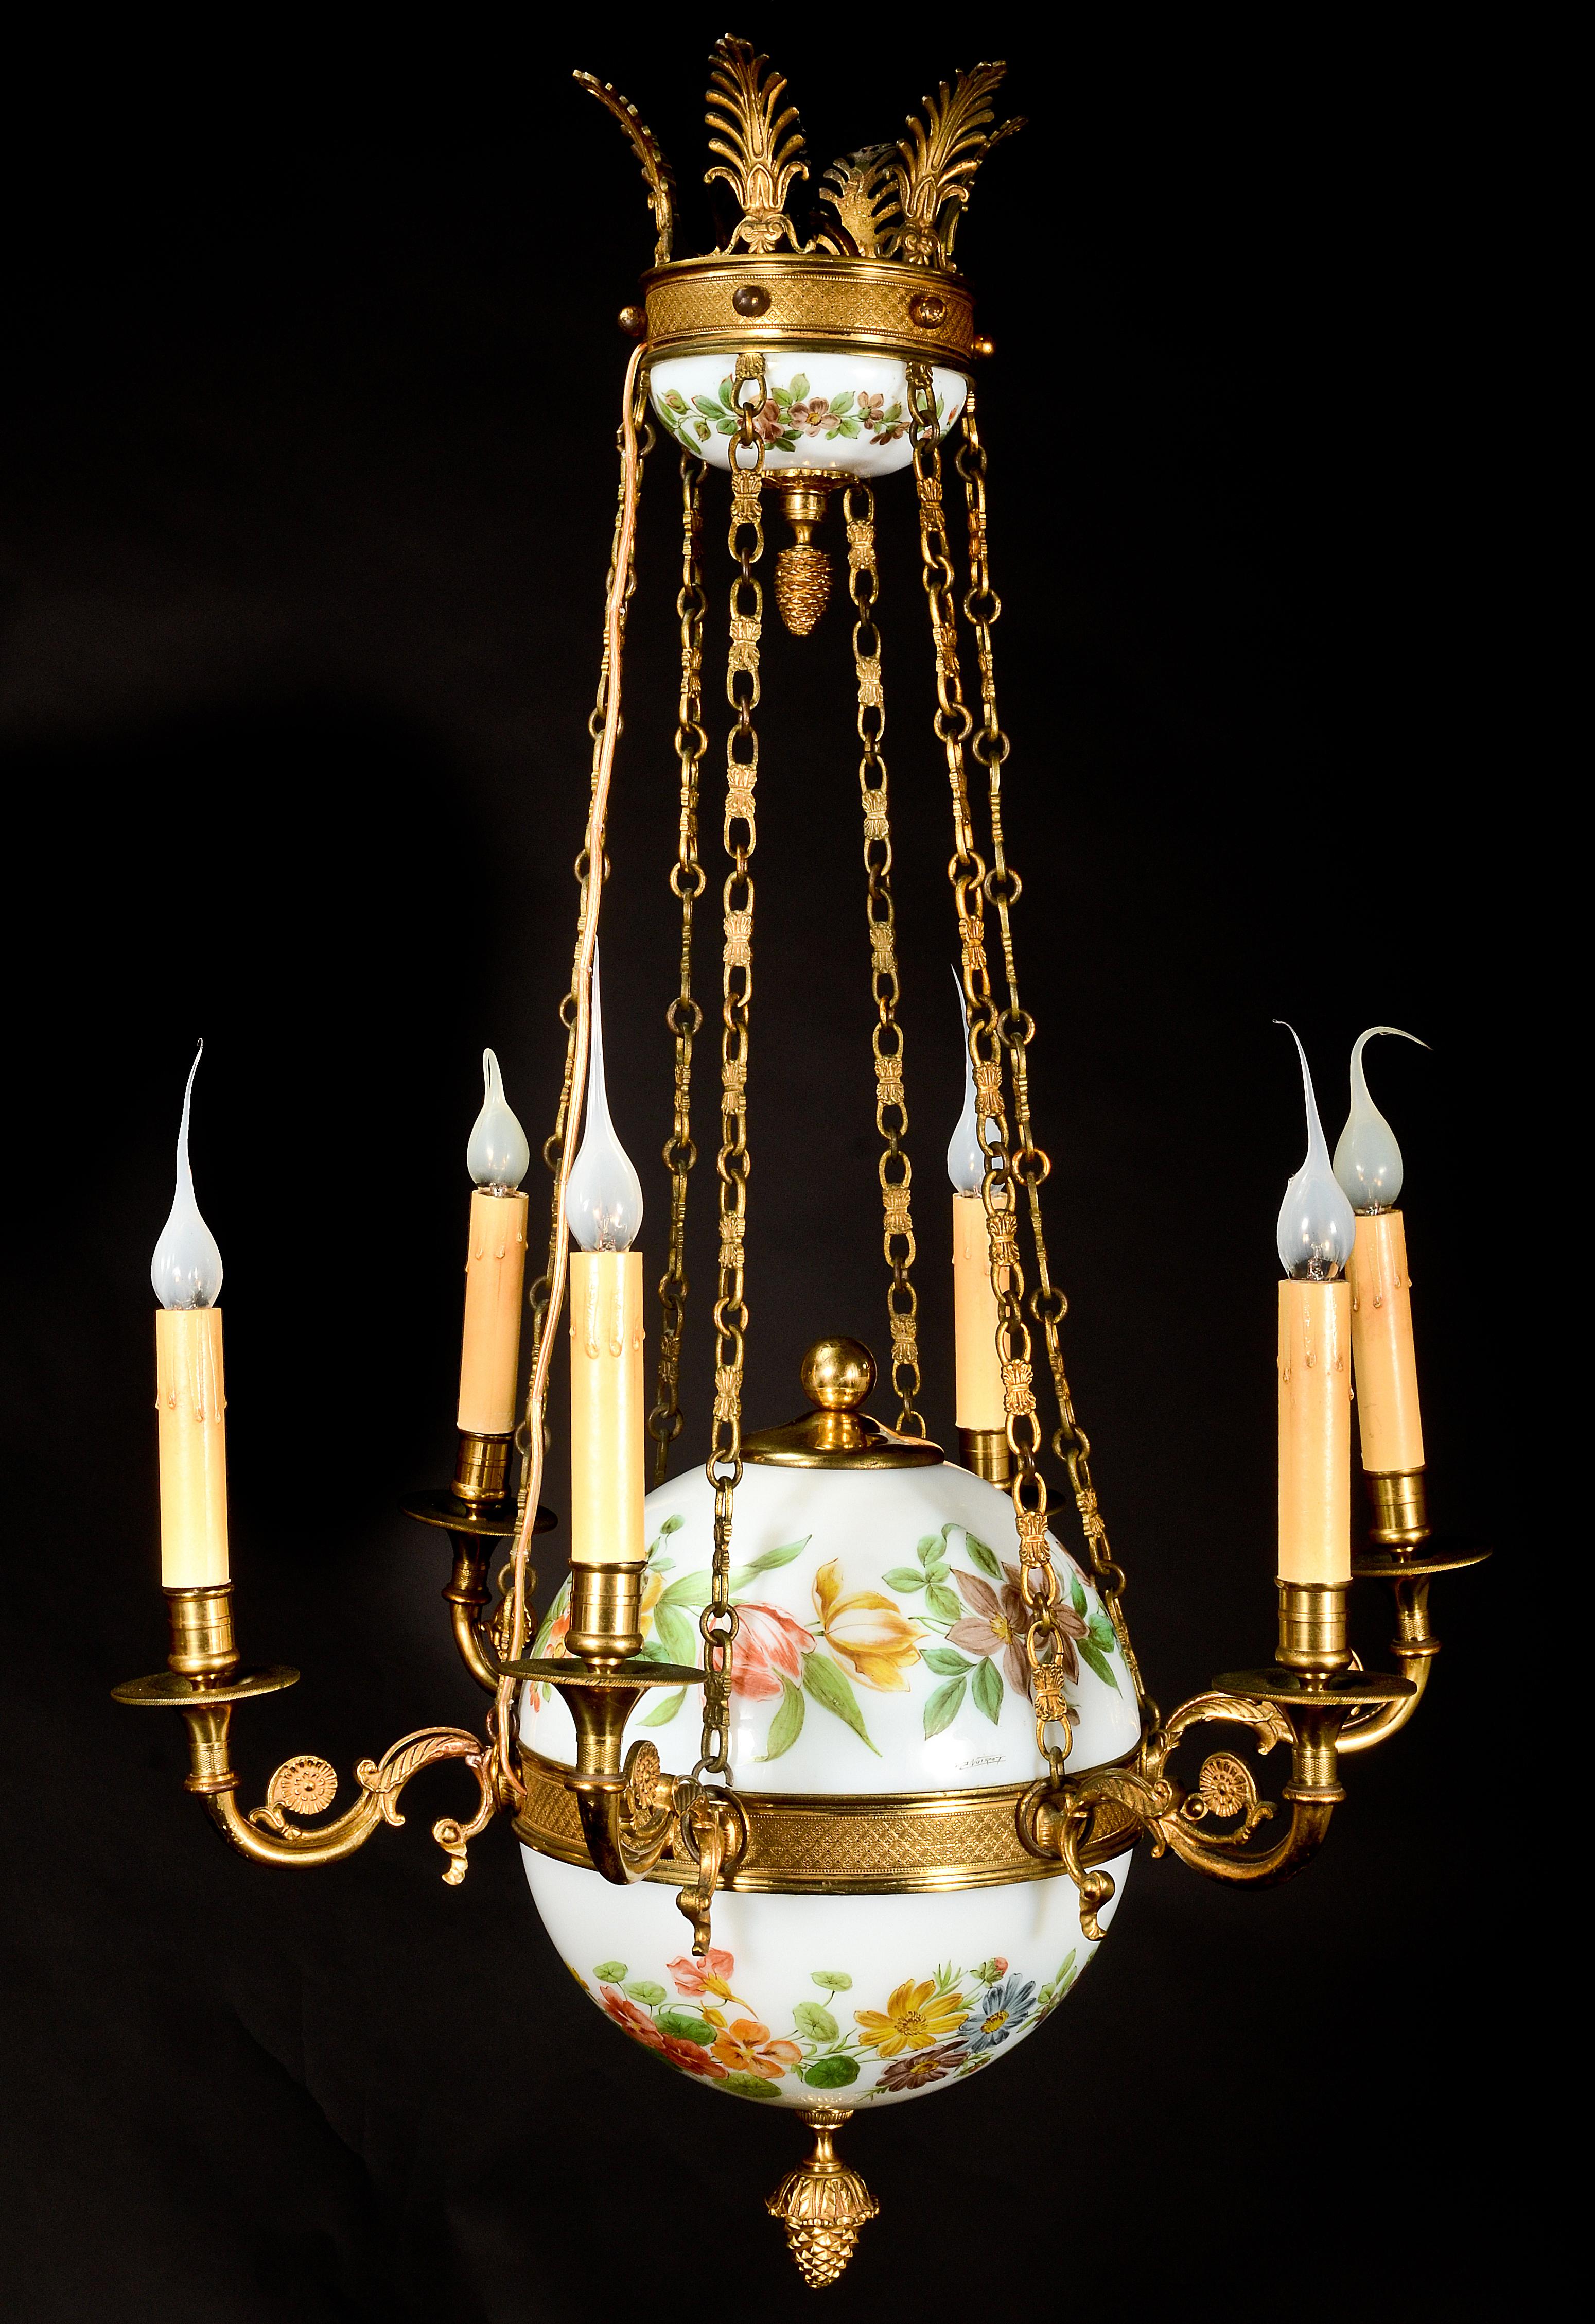 Un beau lustre antique français de style Charles X en bronze doré et verre opalin blanc en forme de boule, de superbe qualité, agrémenté d'émail polychrome peint à la main représentant des fleurs et agrémenté de chaînes en bronze doré et d'un dais